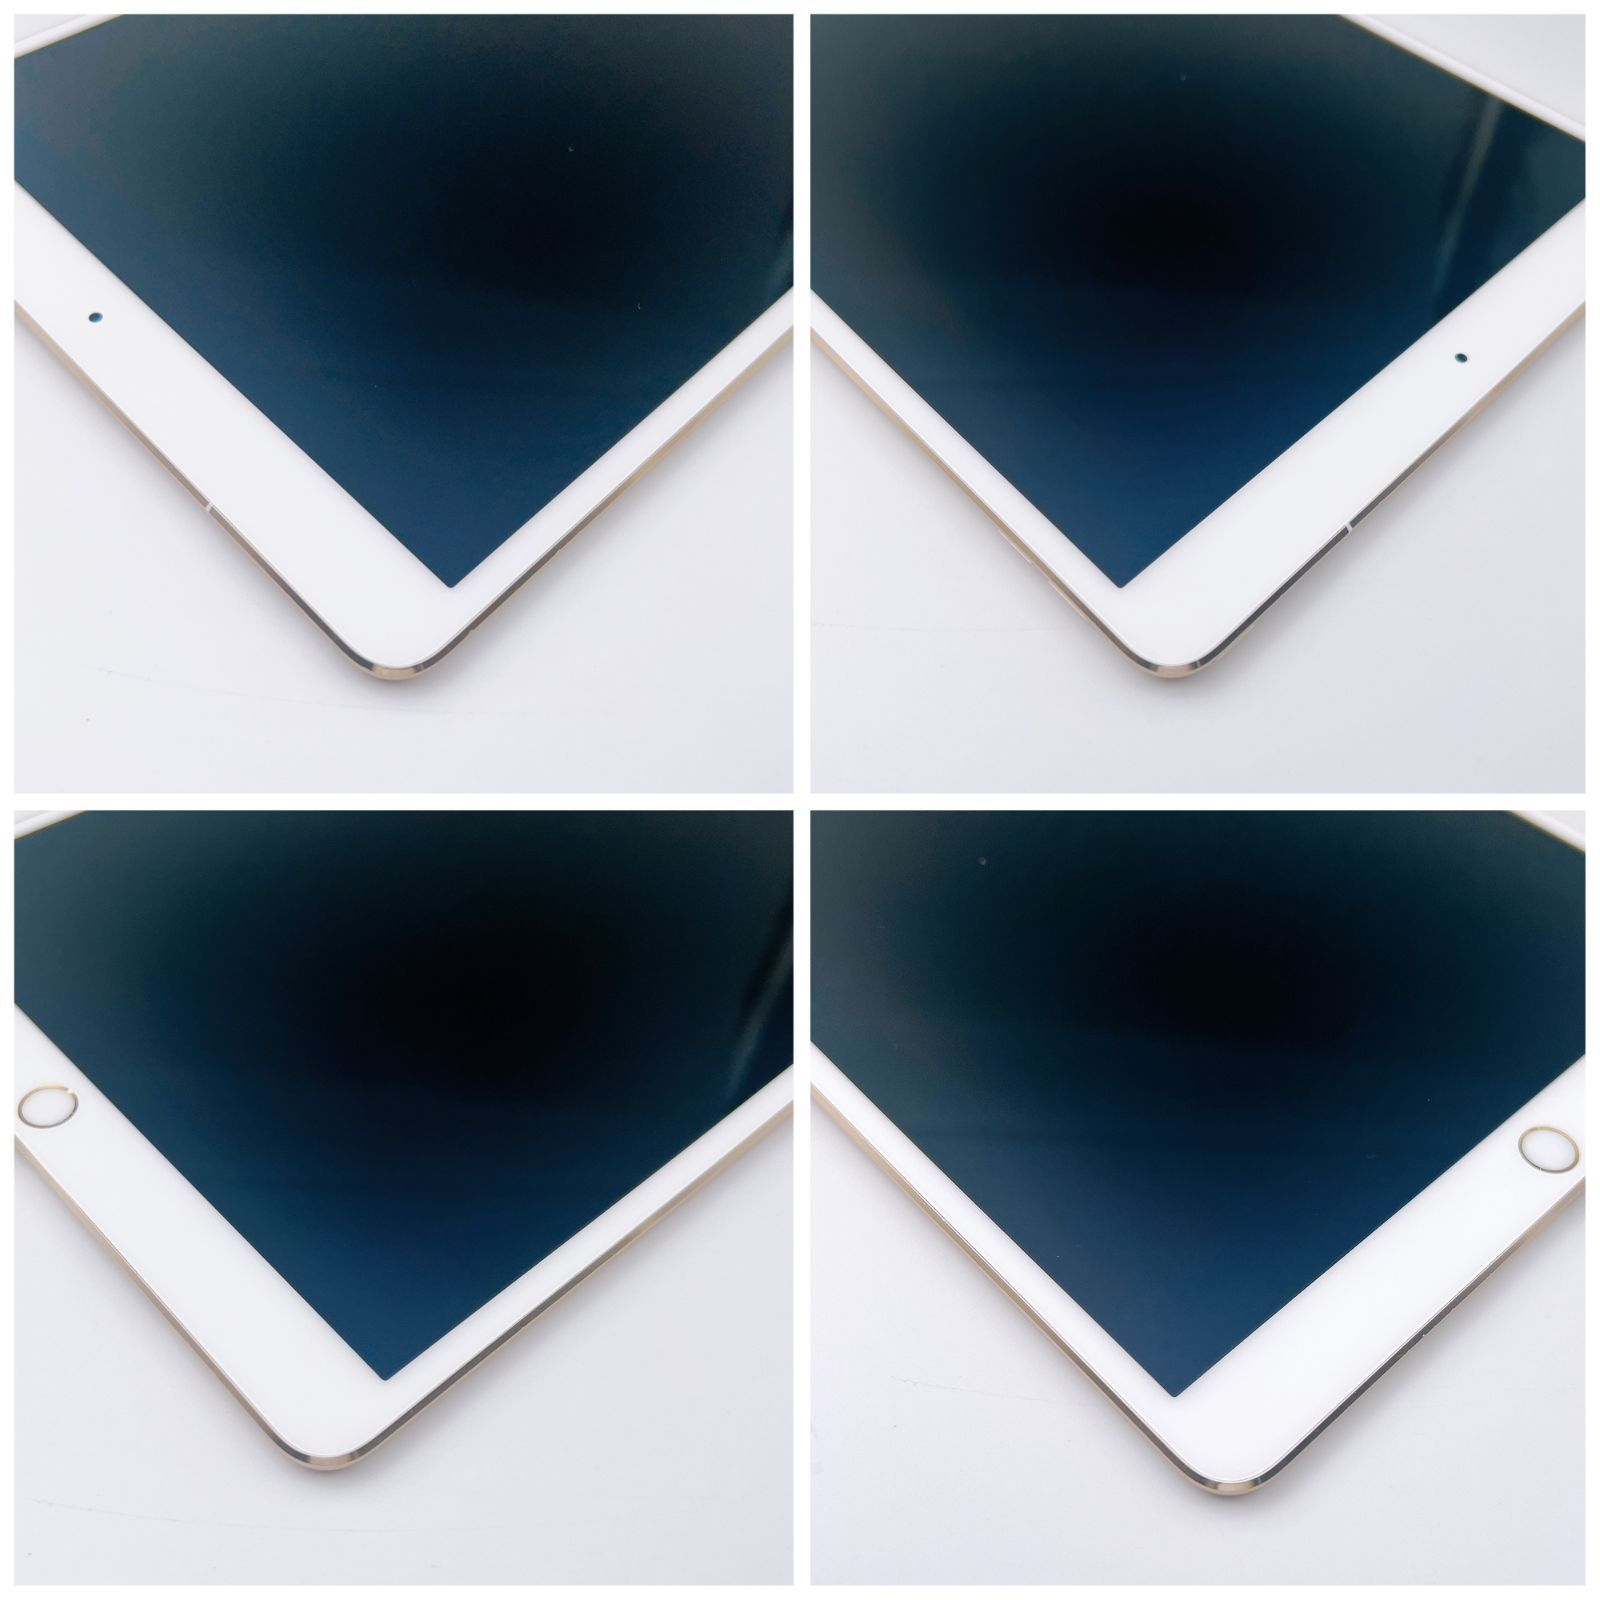 大容量】iPad Pro 256GB SIMフリー 10.5インチ【豪華特典付き】 管理 